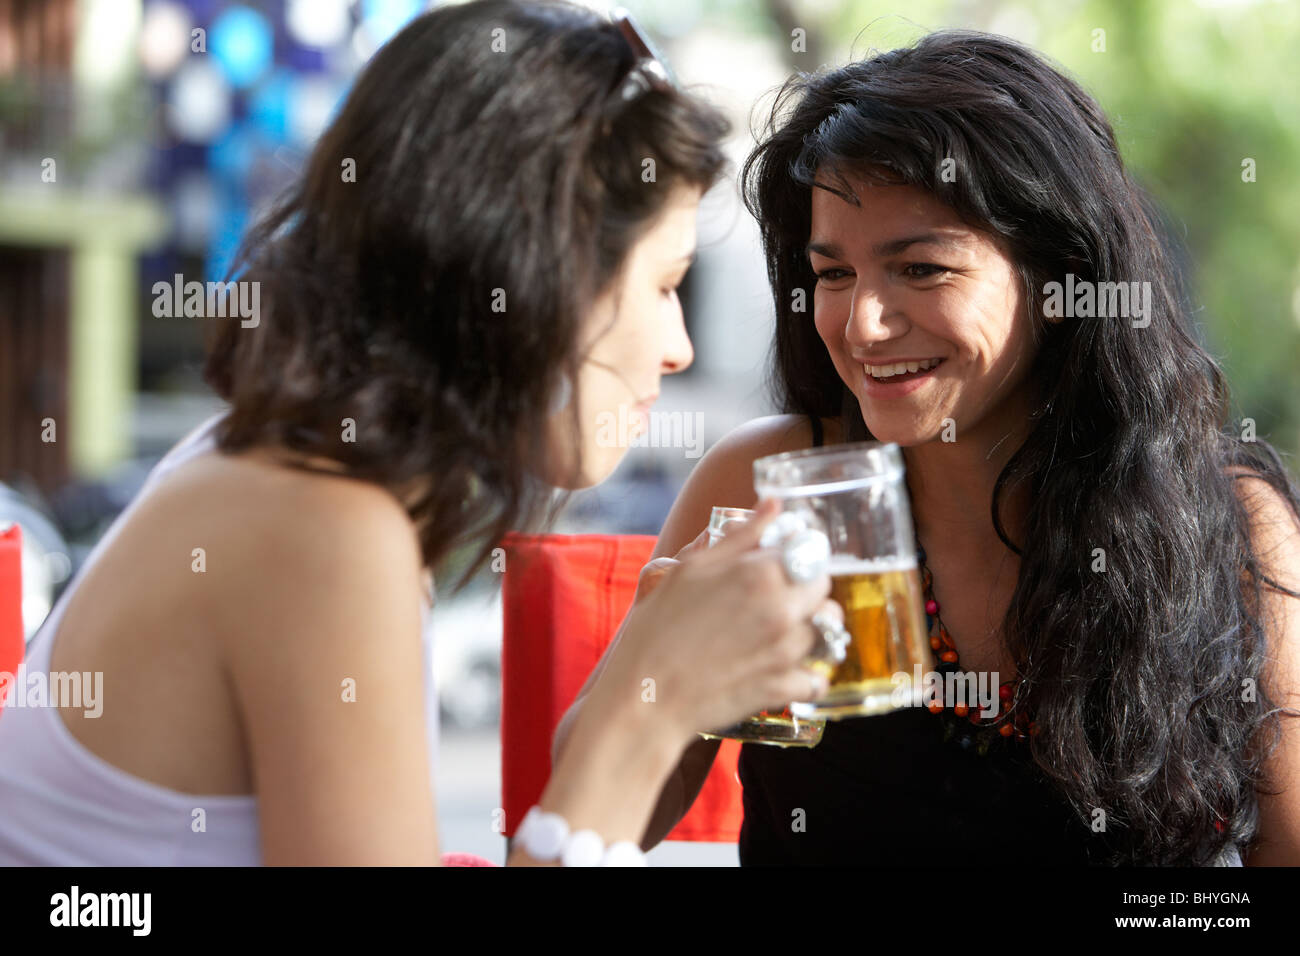 Mitte der zwanziger Jahre hispanischen Frauen teilen einen Drink und genießen ein Lachen auf Outdoor-Straße Café-Tisch Stockfoto